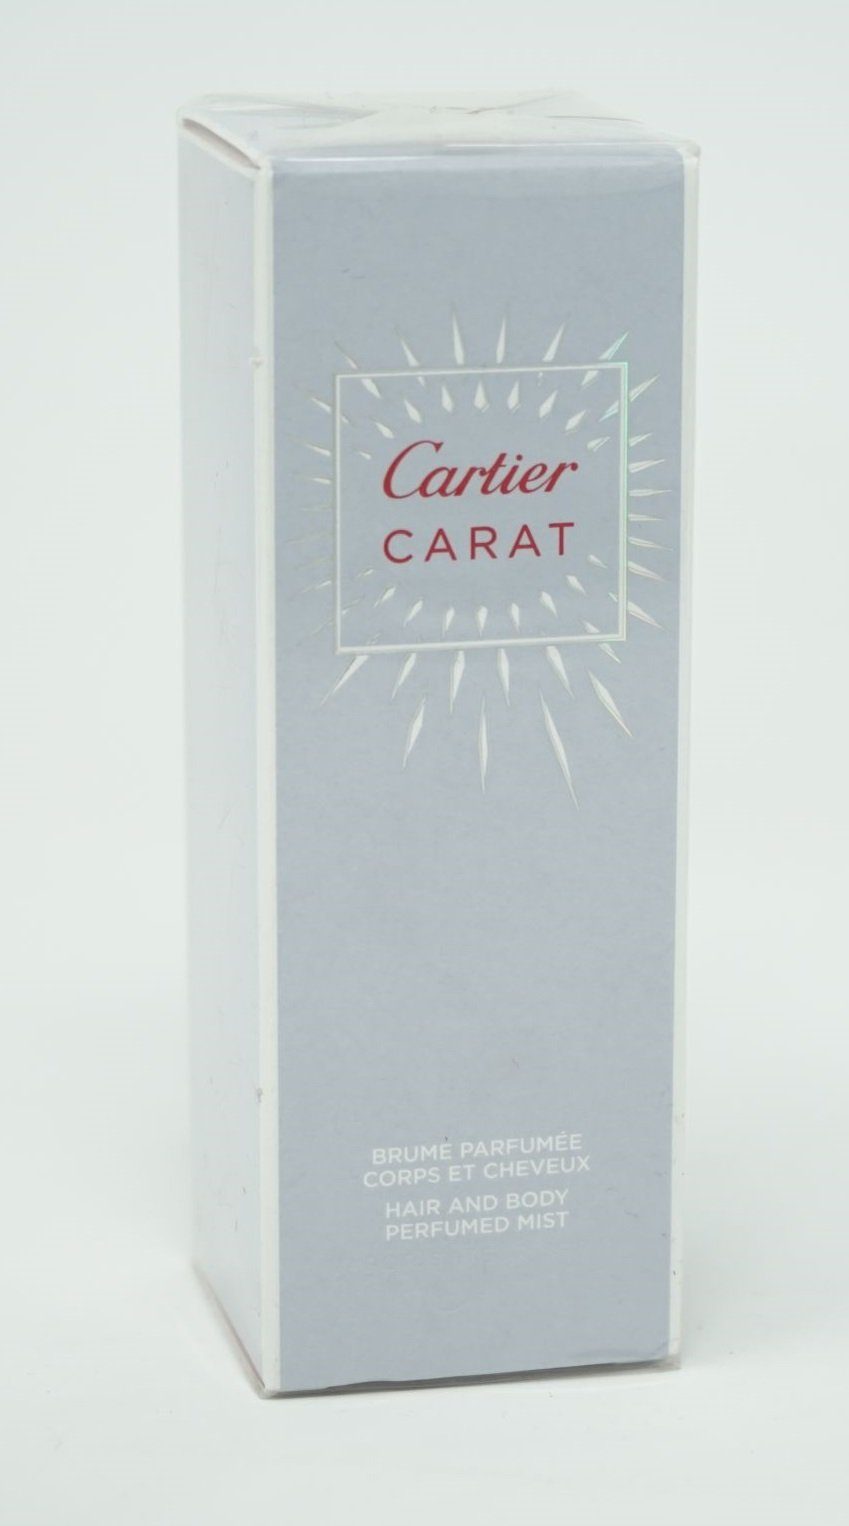 Mist and Cartier Body 100ml Carat Körperspray Cartier Perfumed Hair